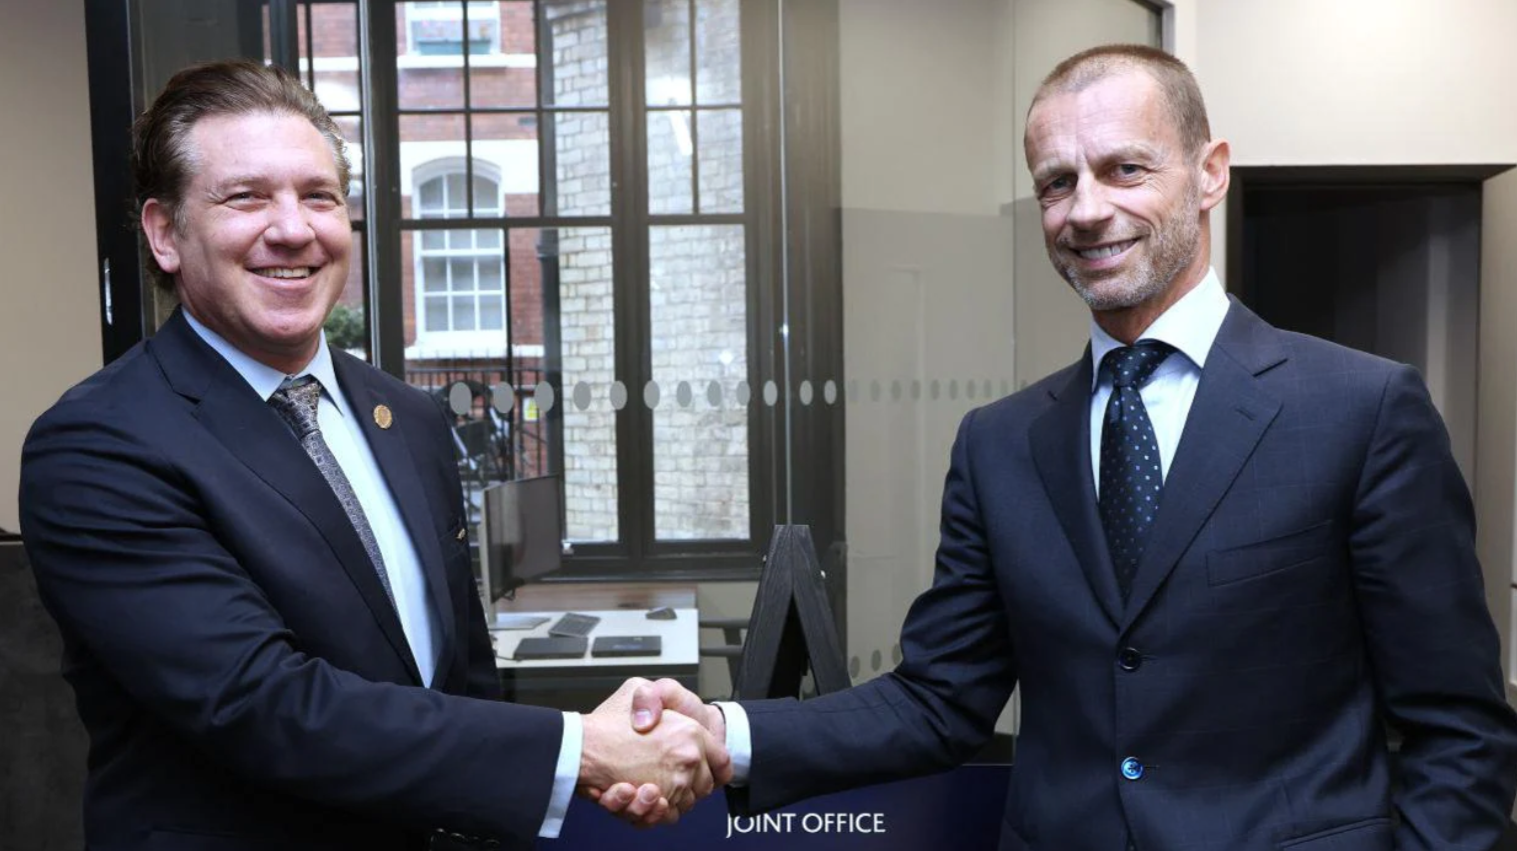 UEFA-CONMEBOL joint office in London opens